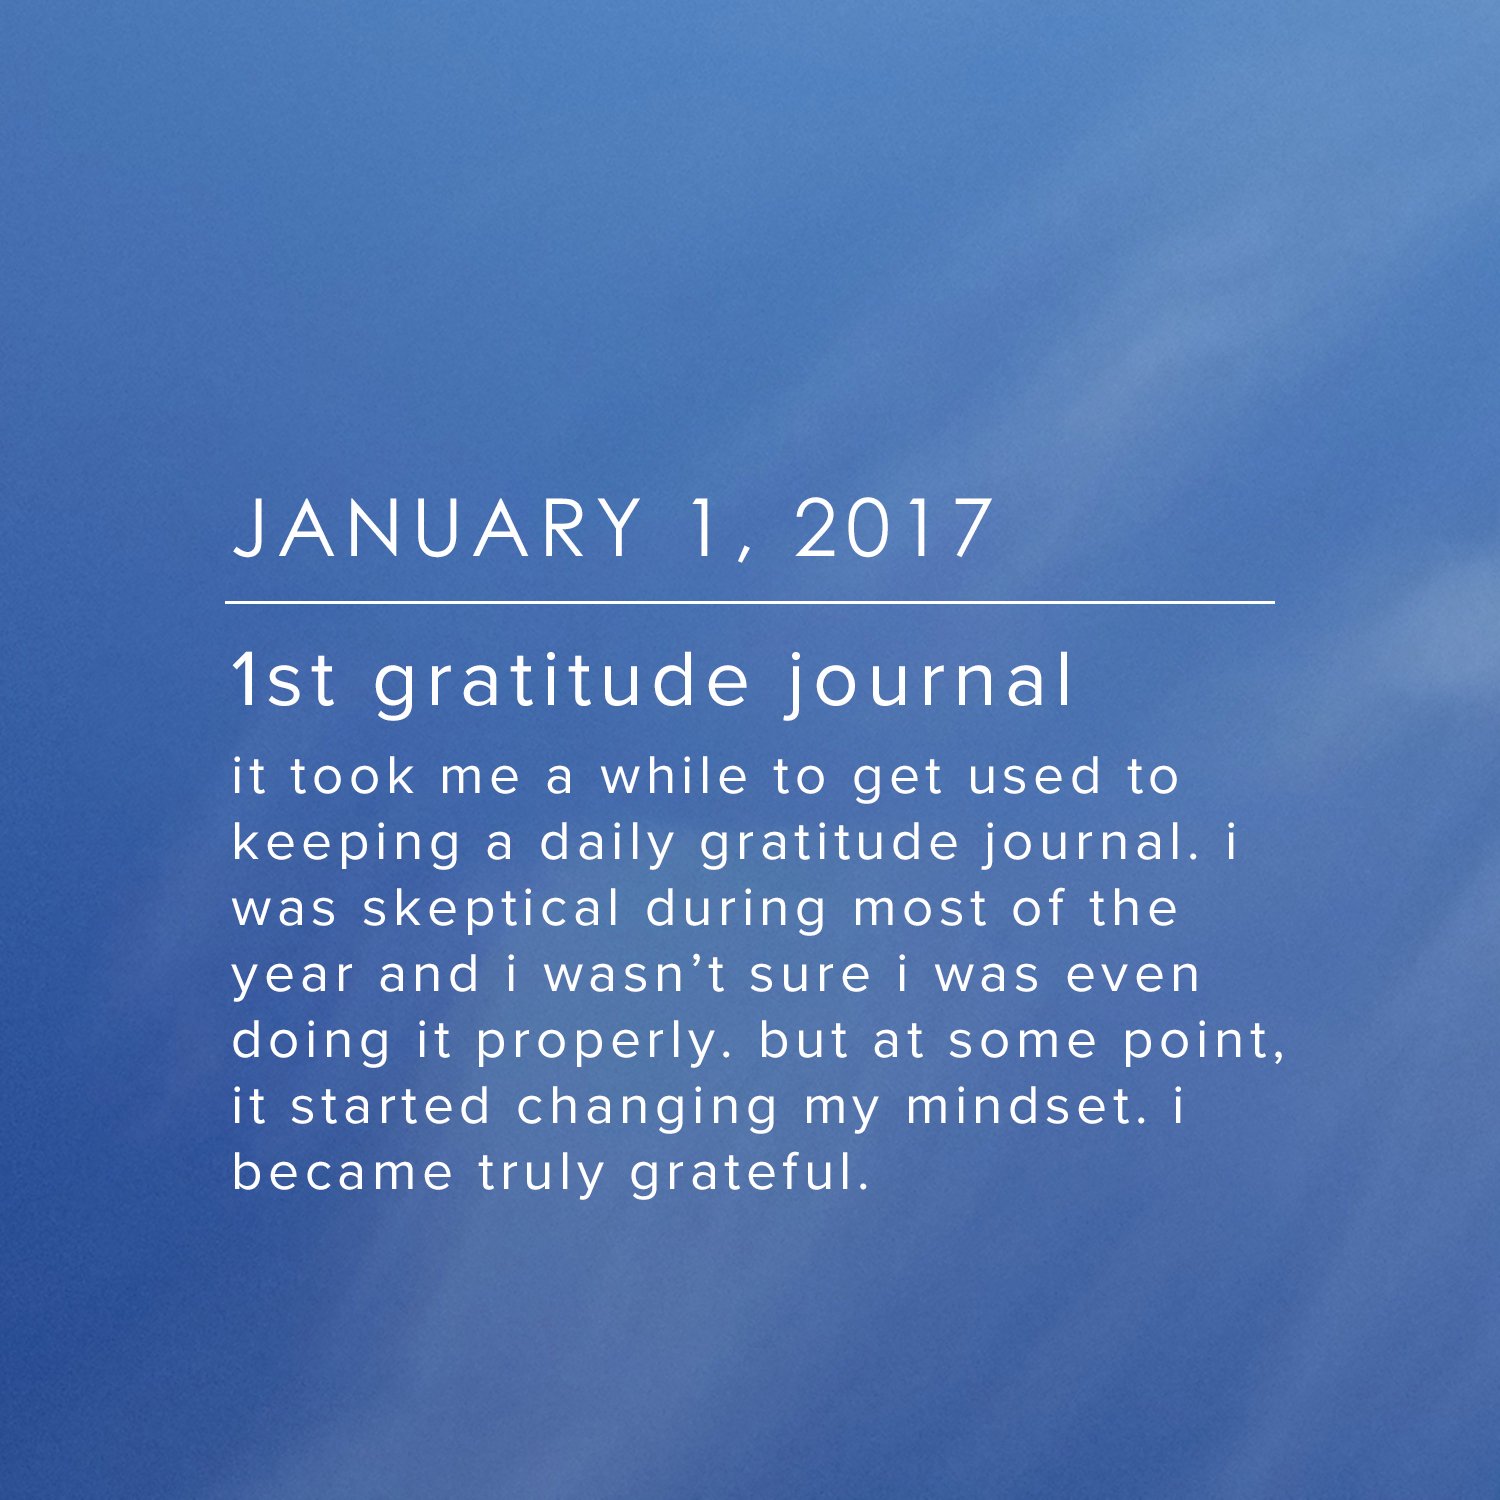 January 1, 2017 - 1st gratitude journal